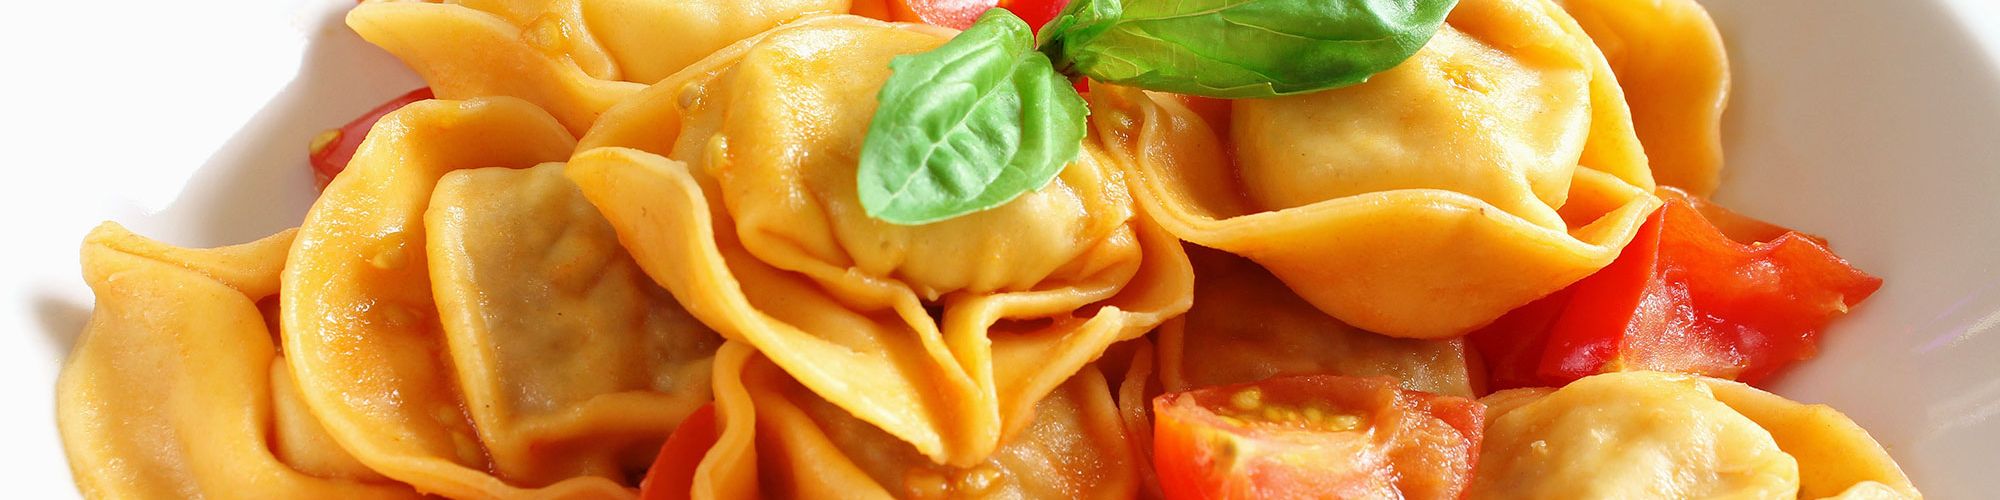 ricetta Tortelloni ai formaggi di Tremosine con pomodorini e basilico con pasta fresca